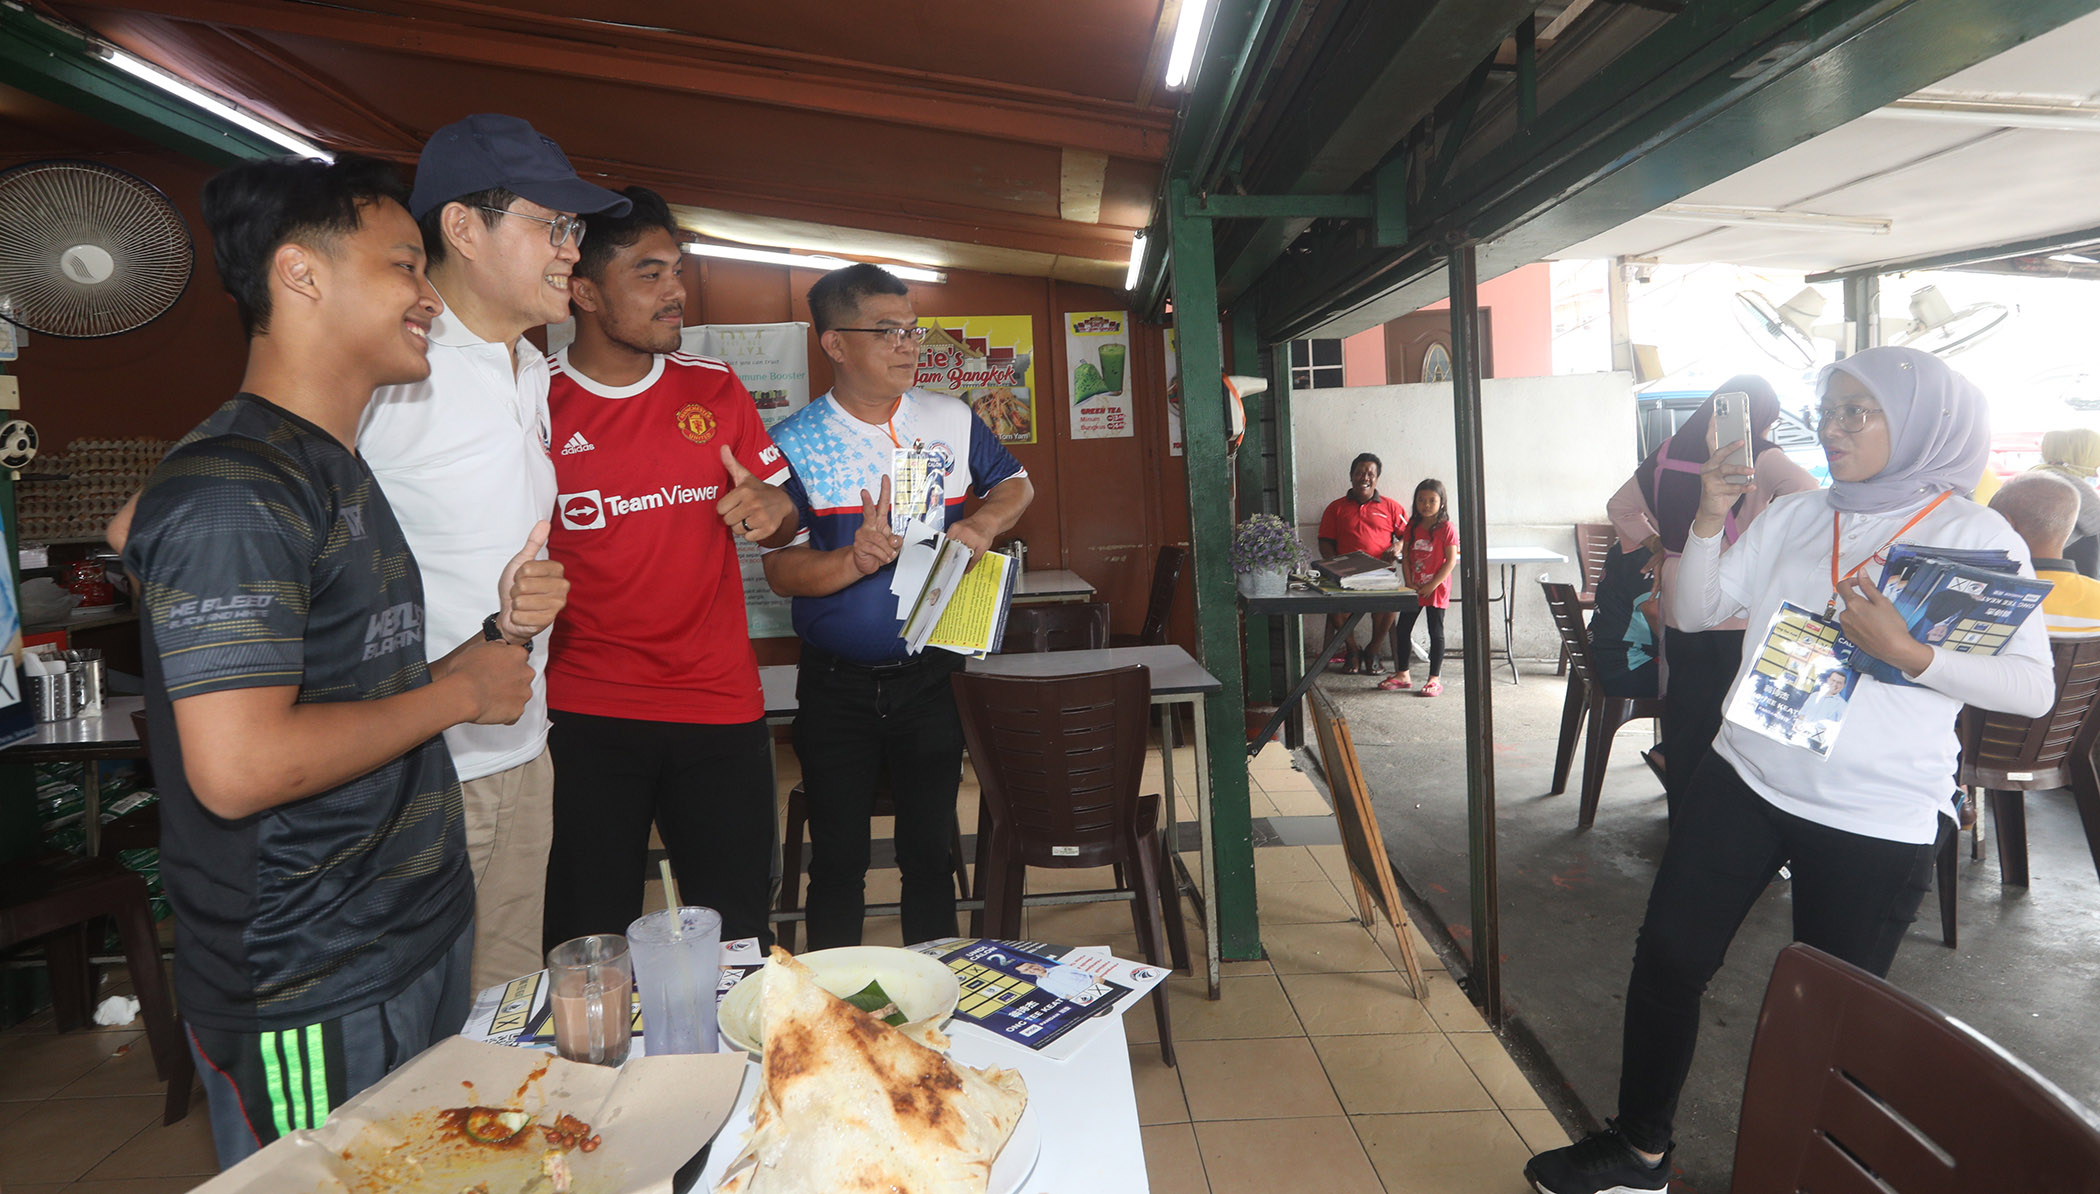 翁诗杰探访马来档口，马来选民反应热烈并寻求合照